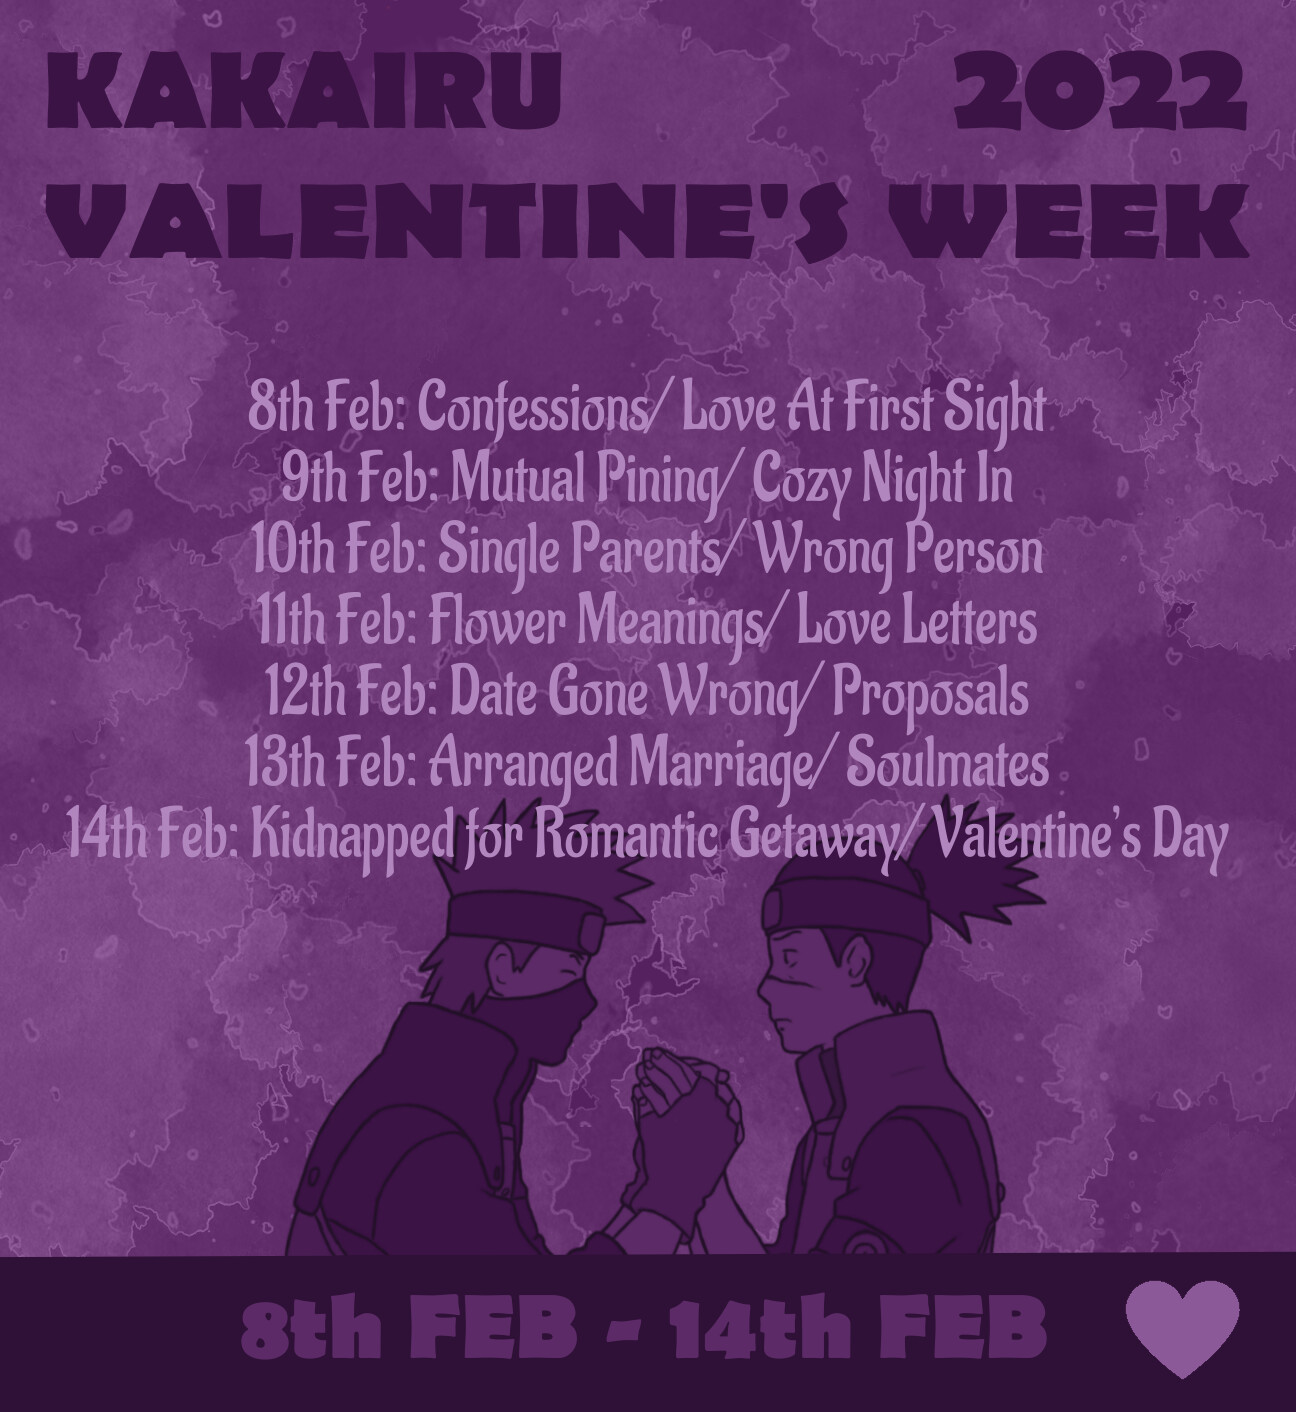 2022 valentine's week prompts